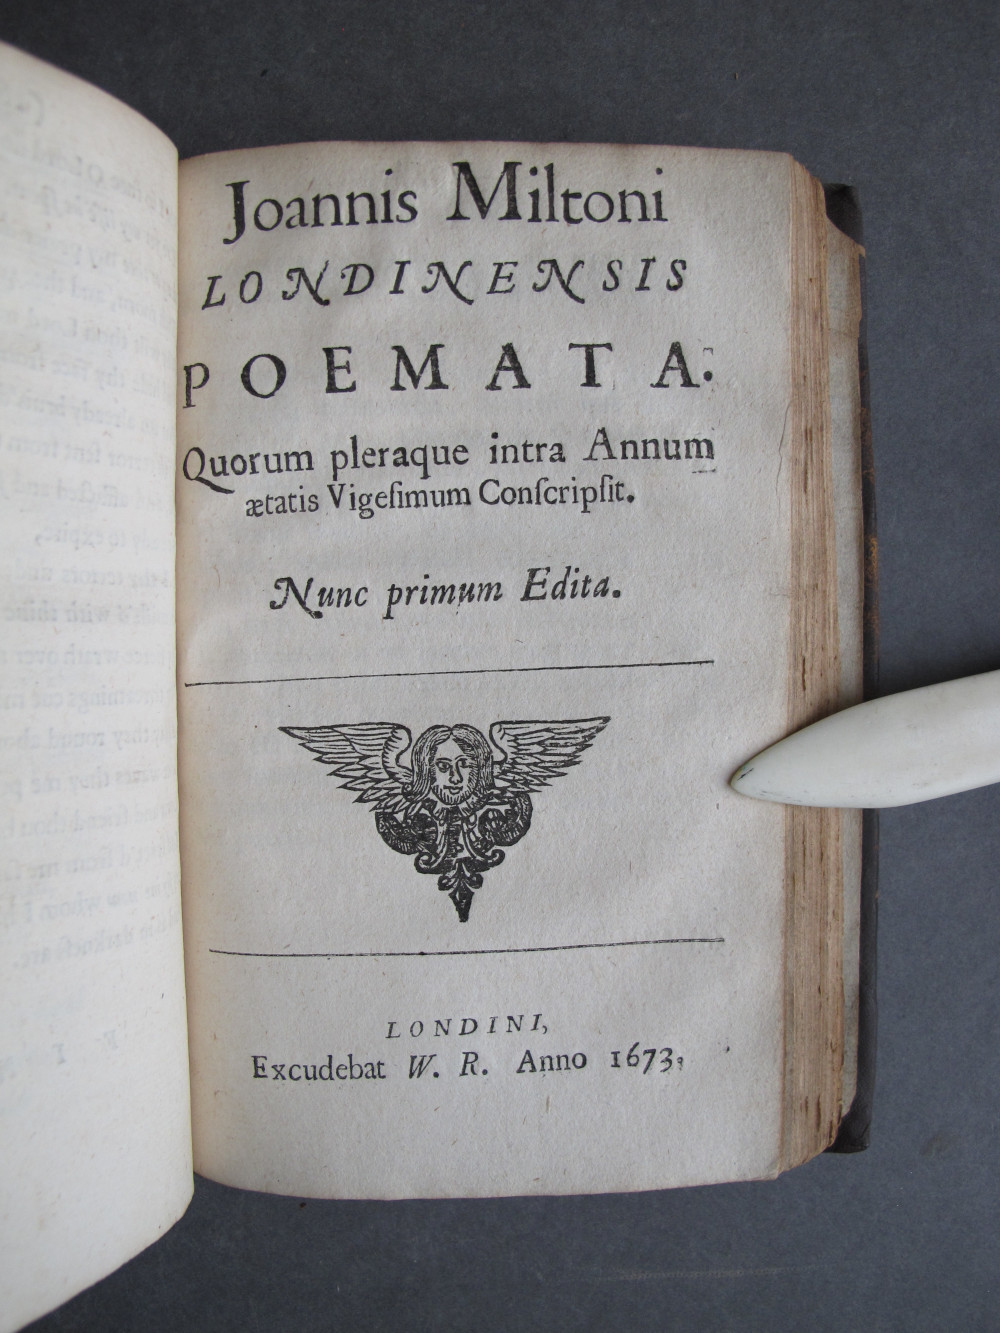 Title Page, text: 
Joannis Miltoni
LONDINENSIS
POEMATA

Quorum pleraque intra Annum
aetatis Vigesimum Conscripsit.

Nunc primum Edita.

LONDINI
Excudebat W. R. Anno 1673.

